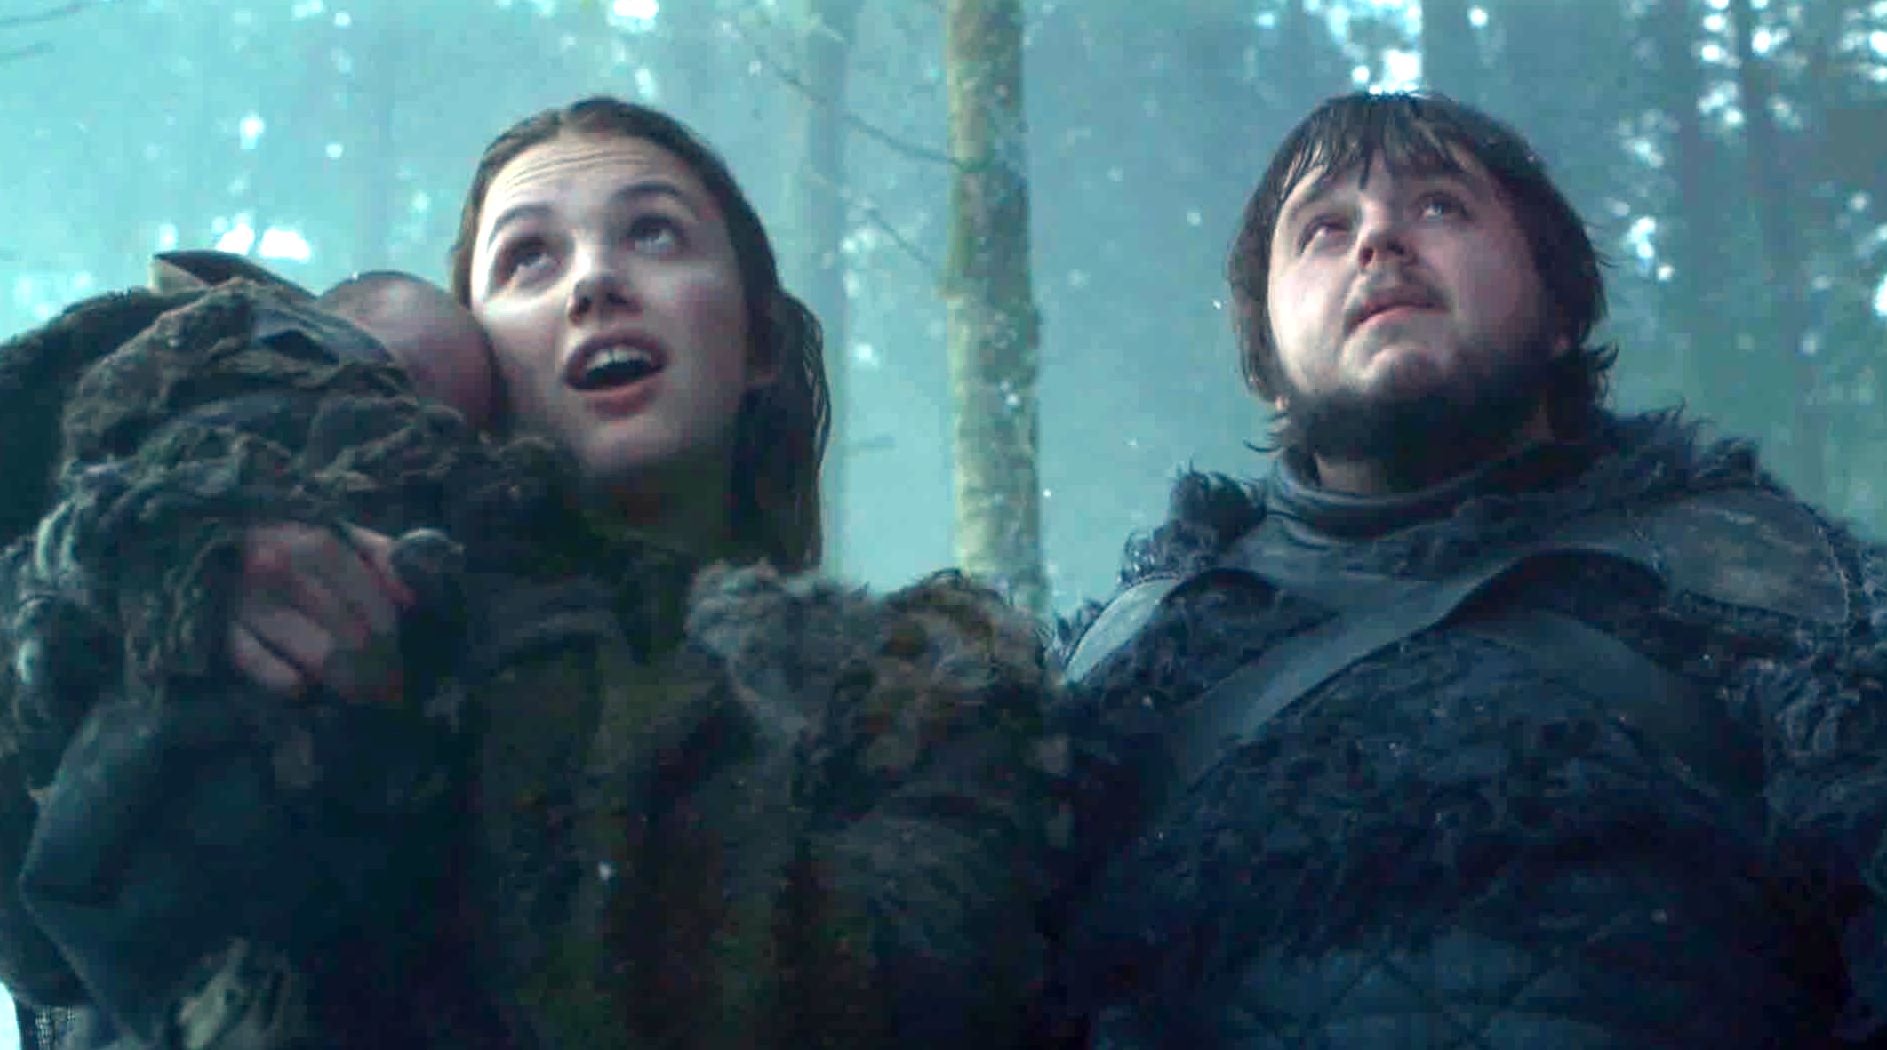 Gilly y Samwell Tarly tendrán un papel determinante en la última temporada de Game of Thrones. (Foto Prensa Libre: HBO)